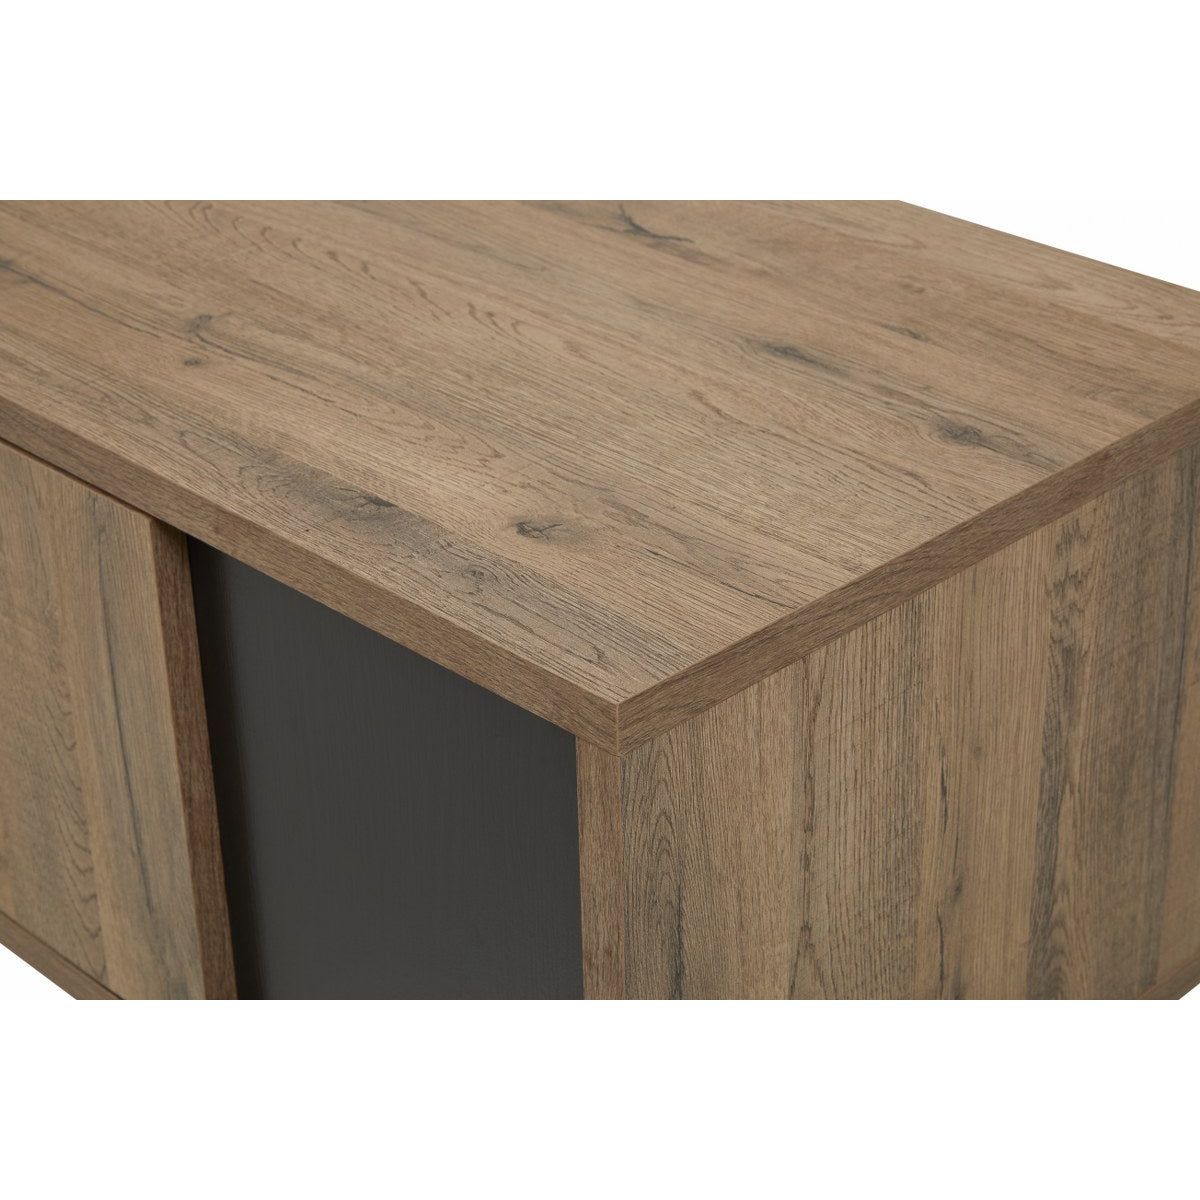 TV cabinet | Furniture series Manor | brown, natural, black | 156